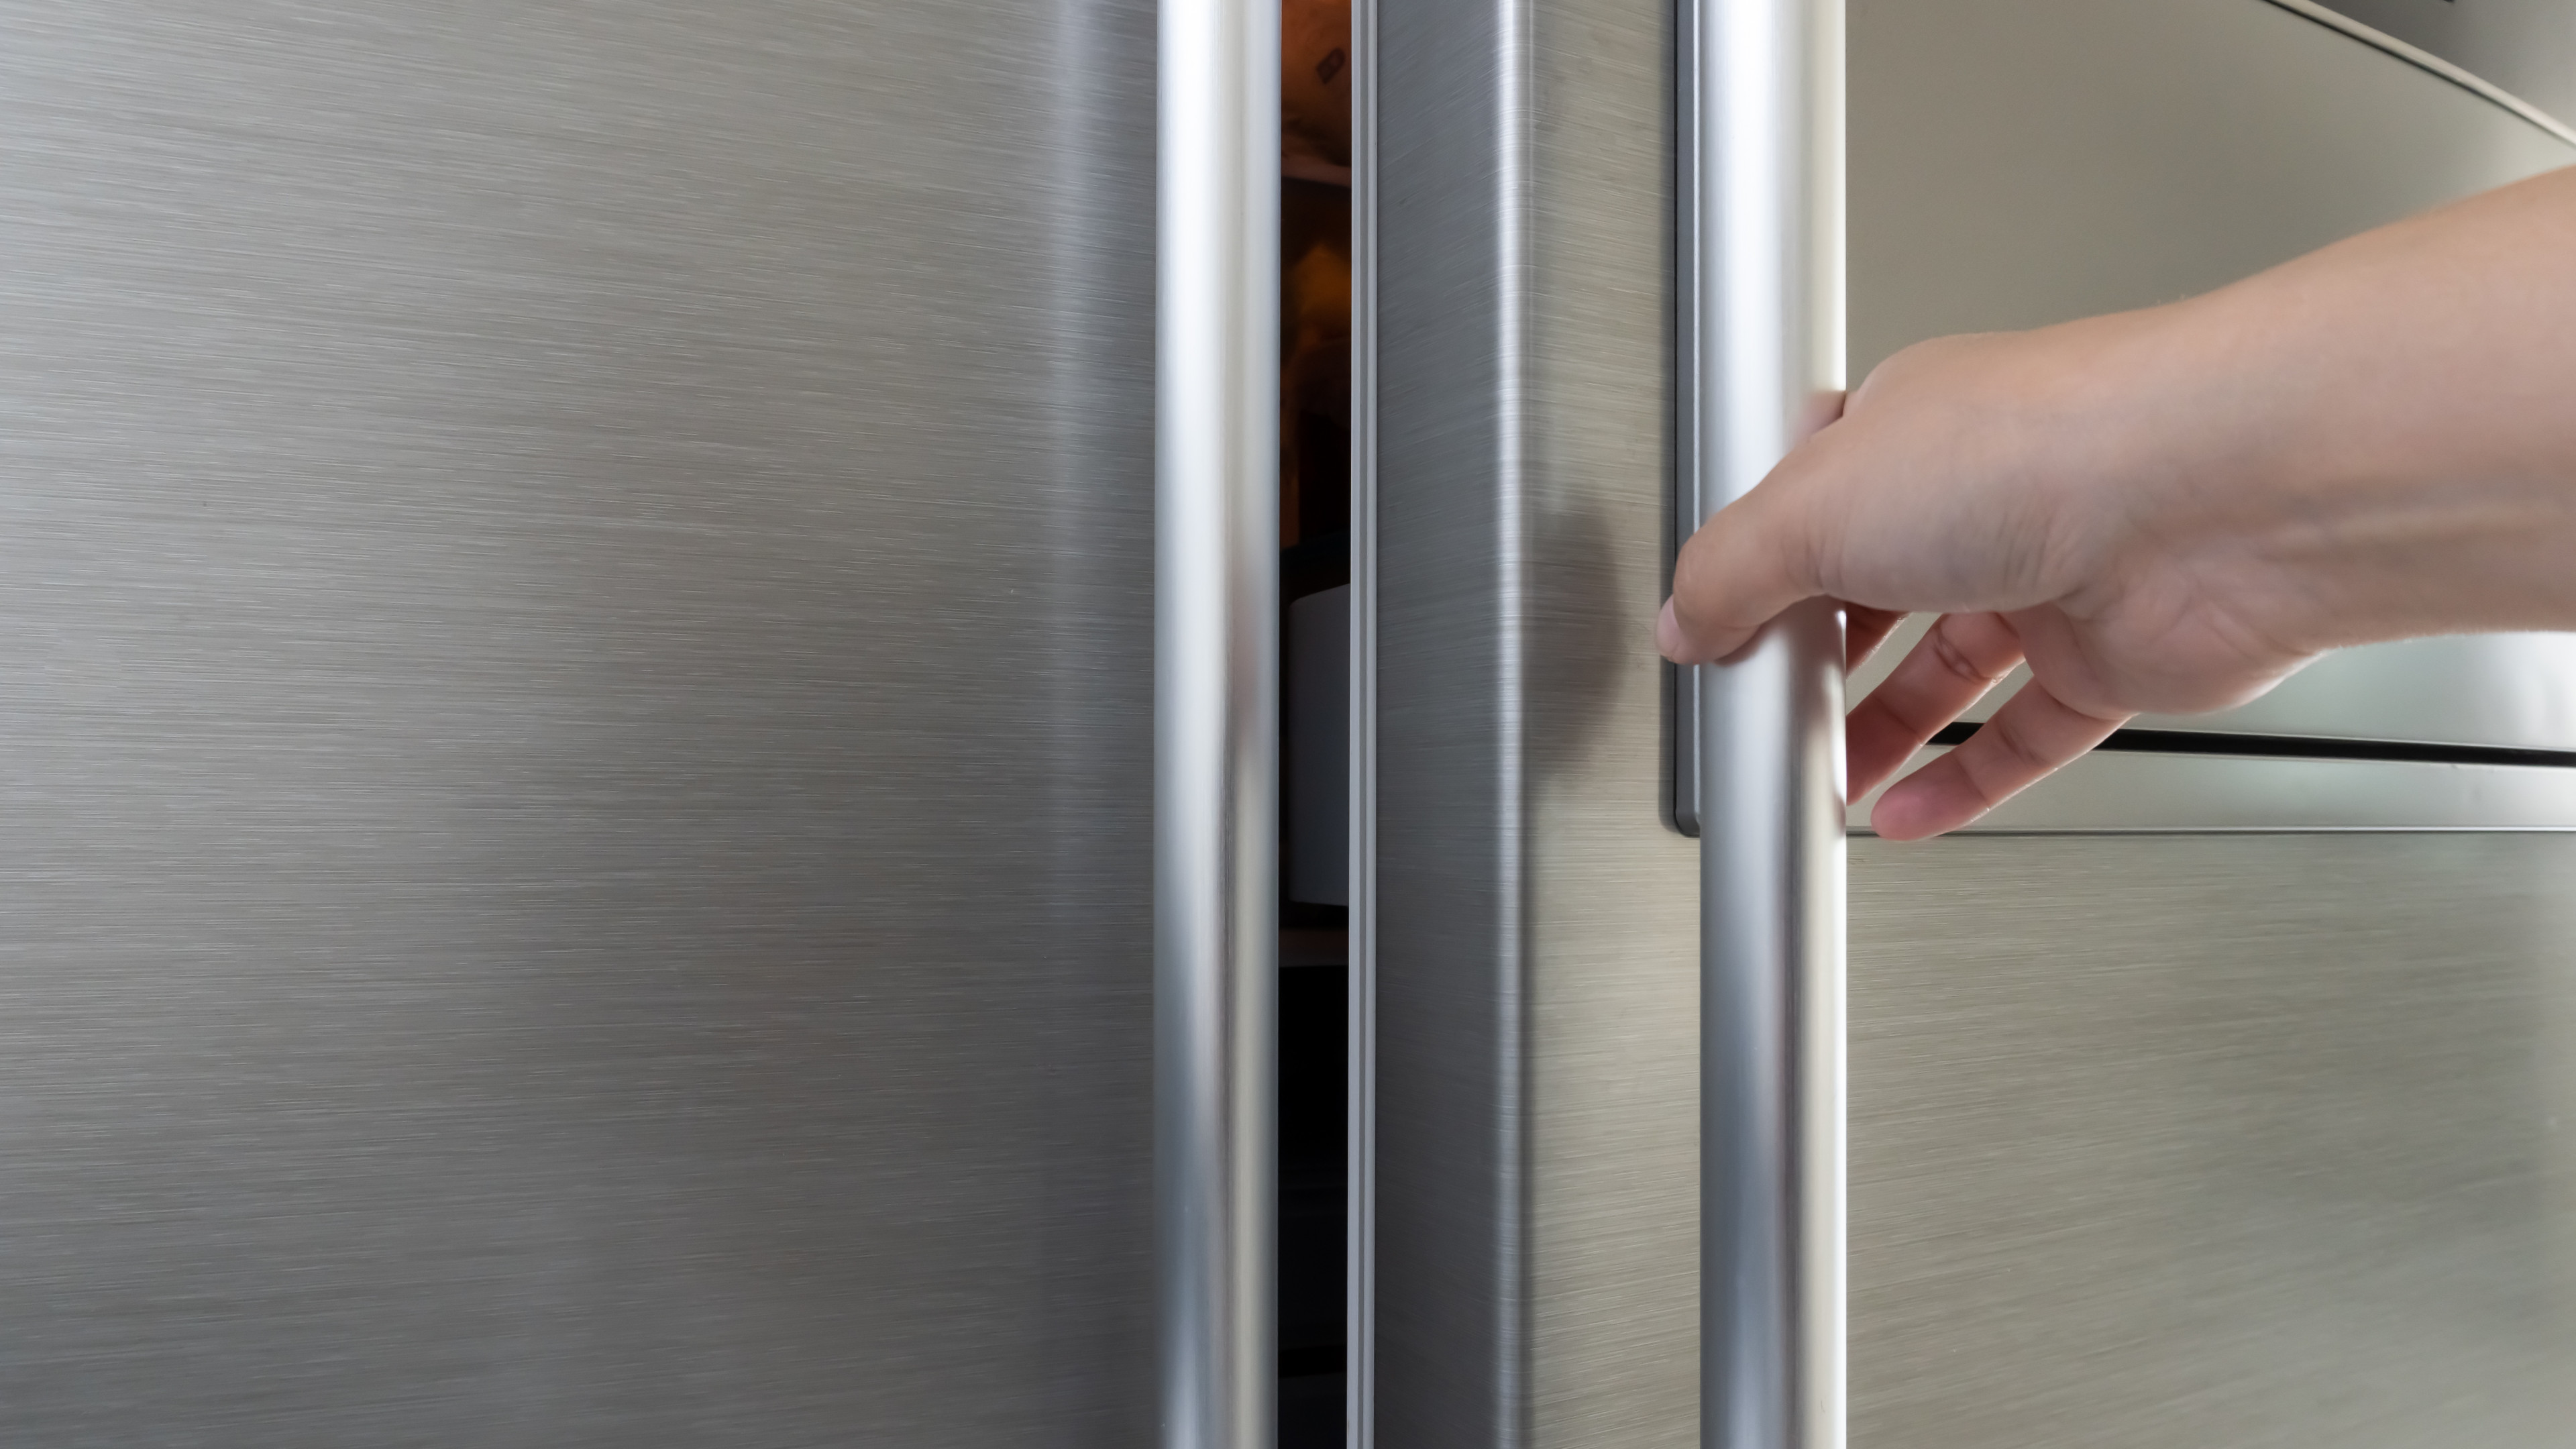 Woman's hand opening a gray metallic refrigerator door